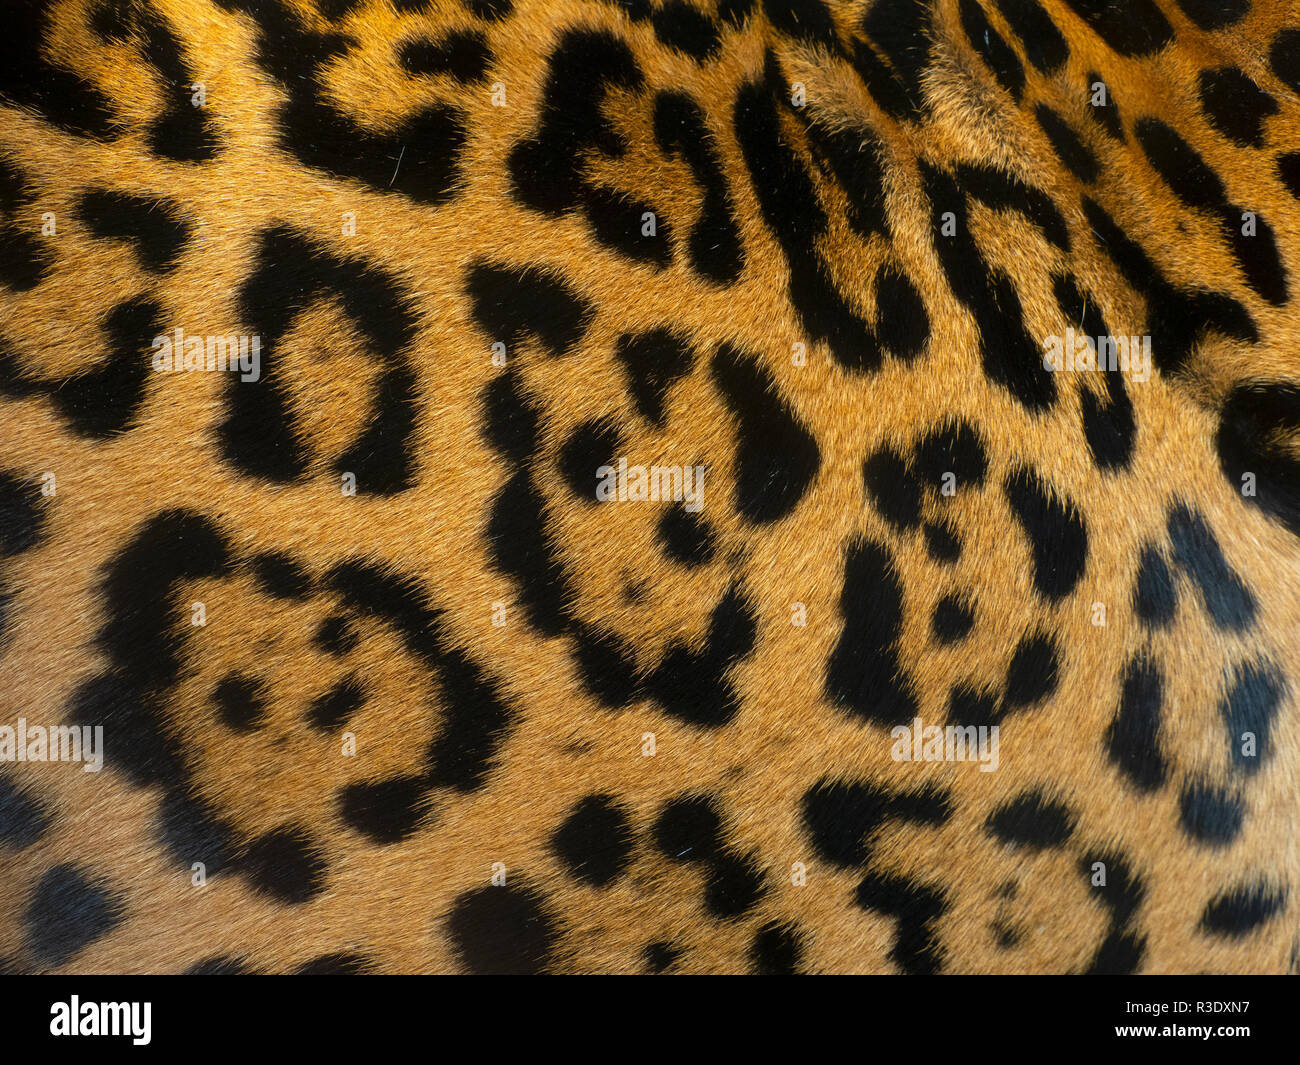 Spotted fur of Jaguar  Panthera onca Stock Photo